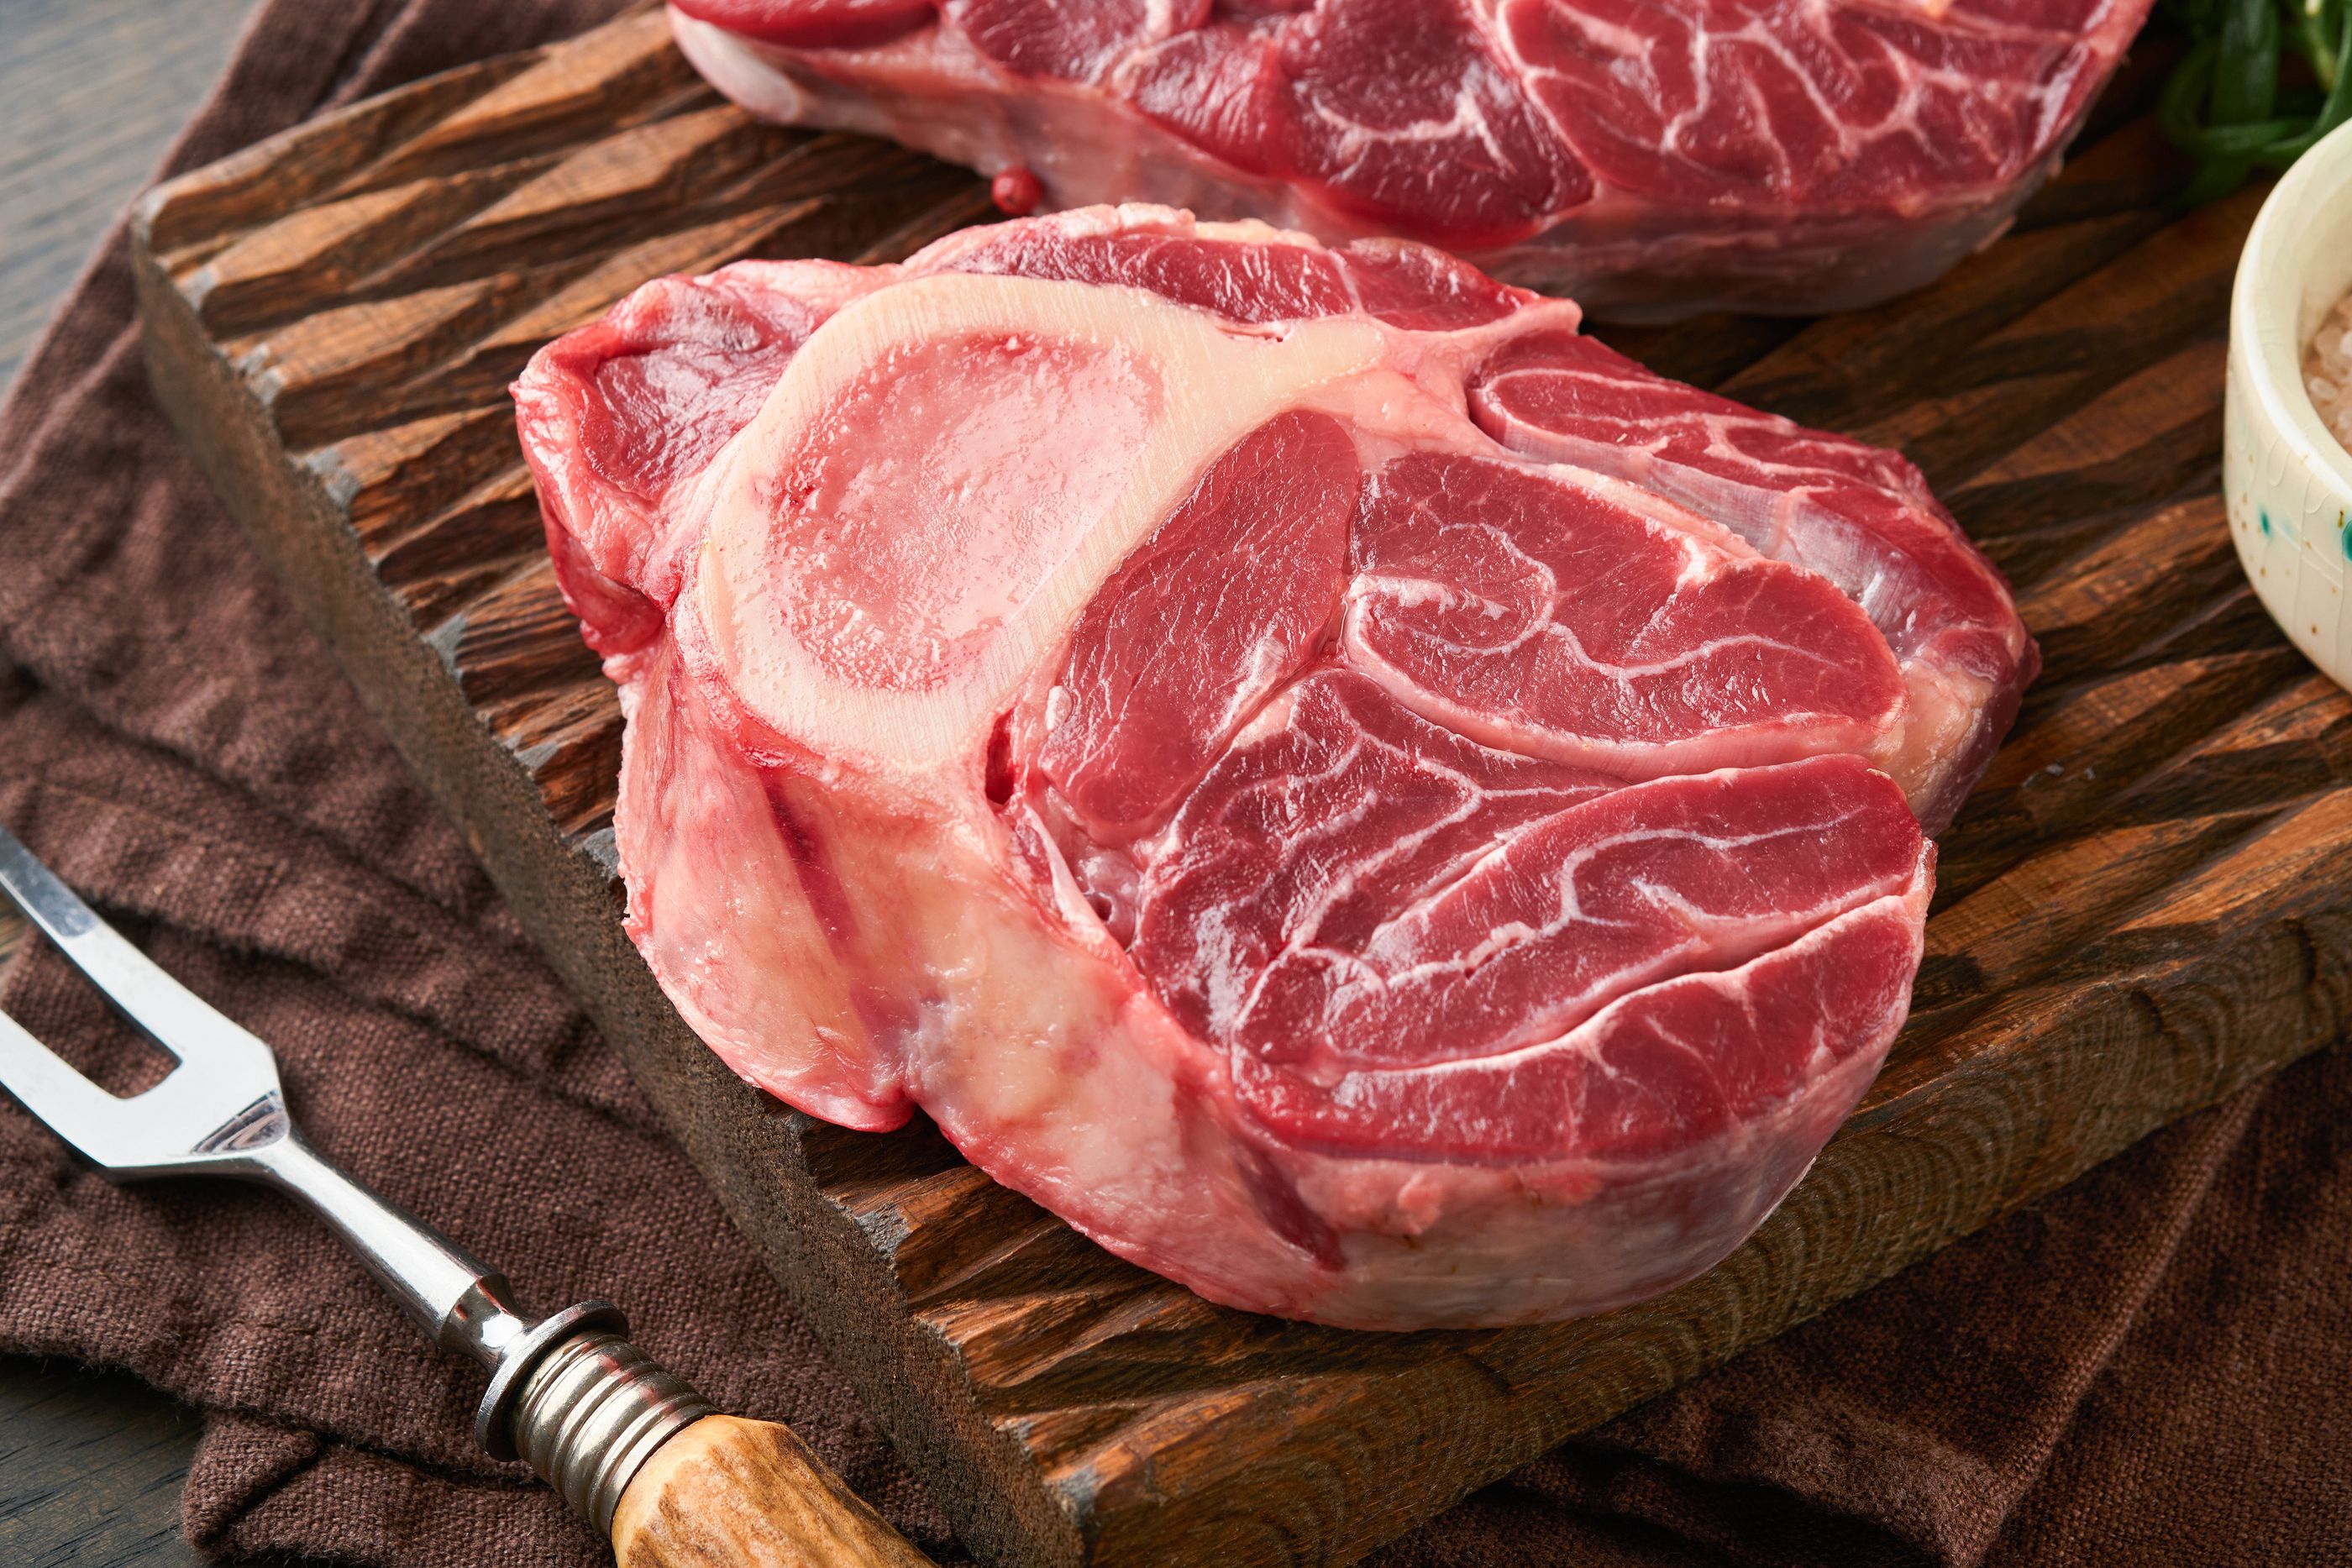 Los consejos de la OCU para evitar riesgos con la carne cruda. Foto: Bigstock